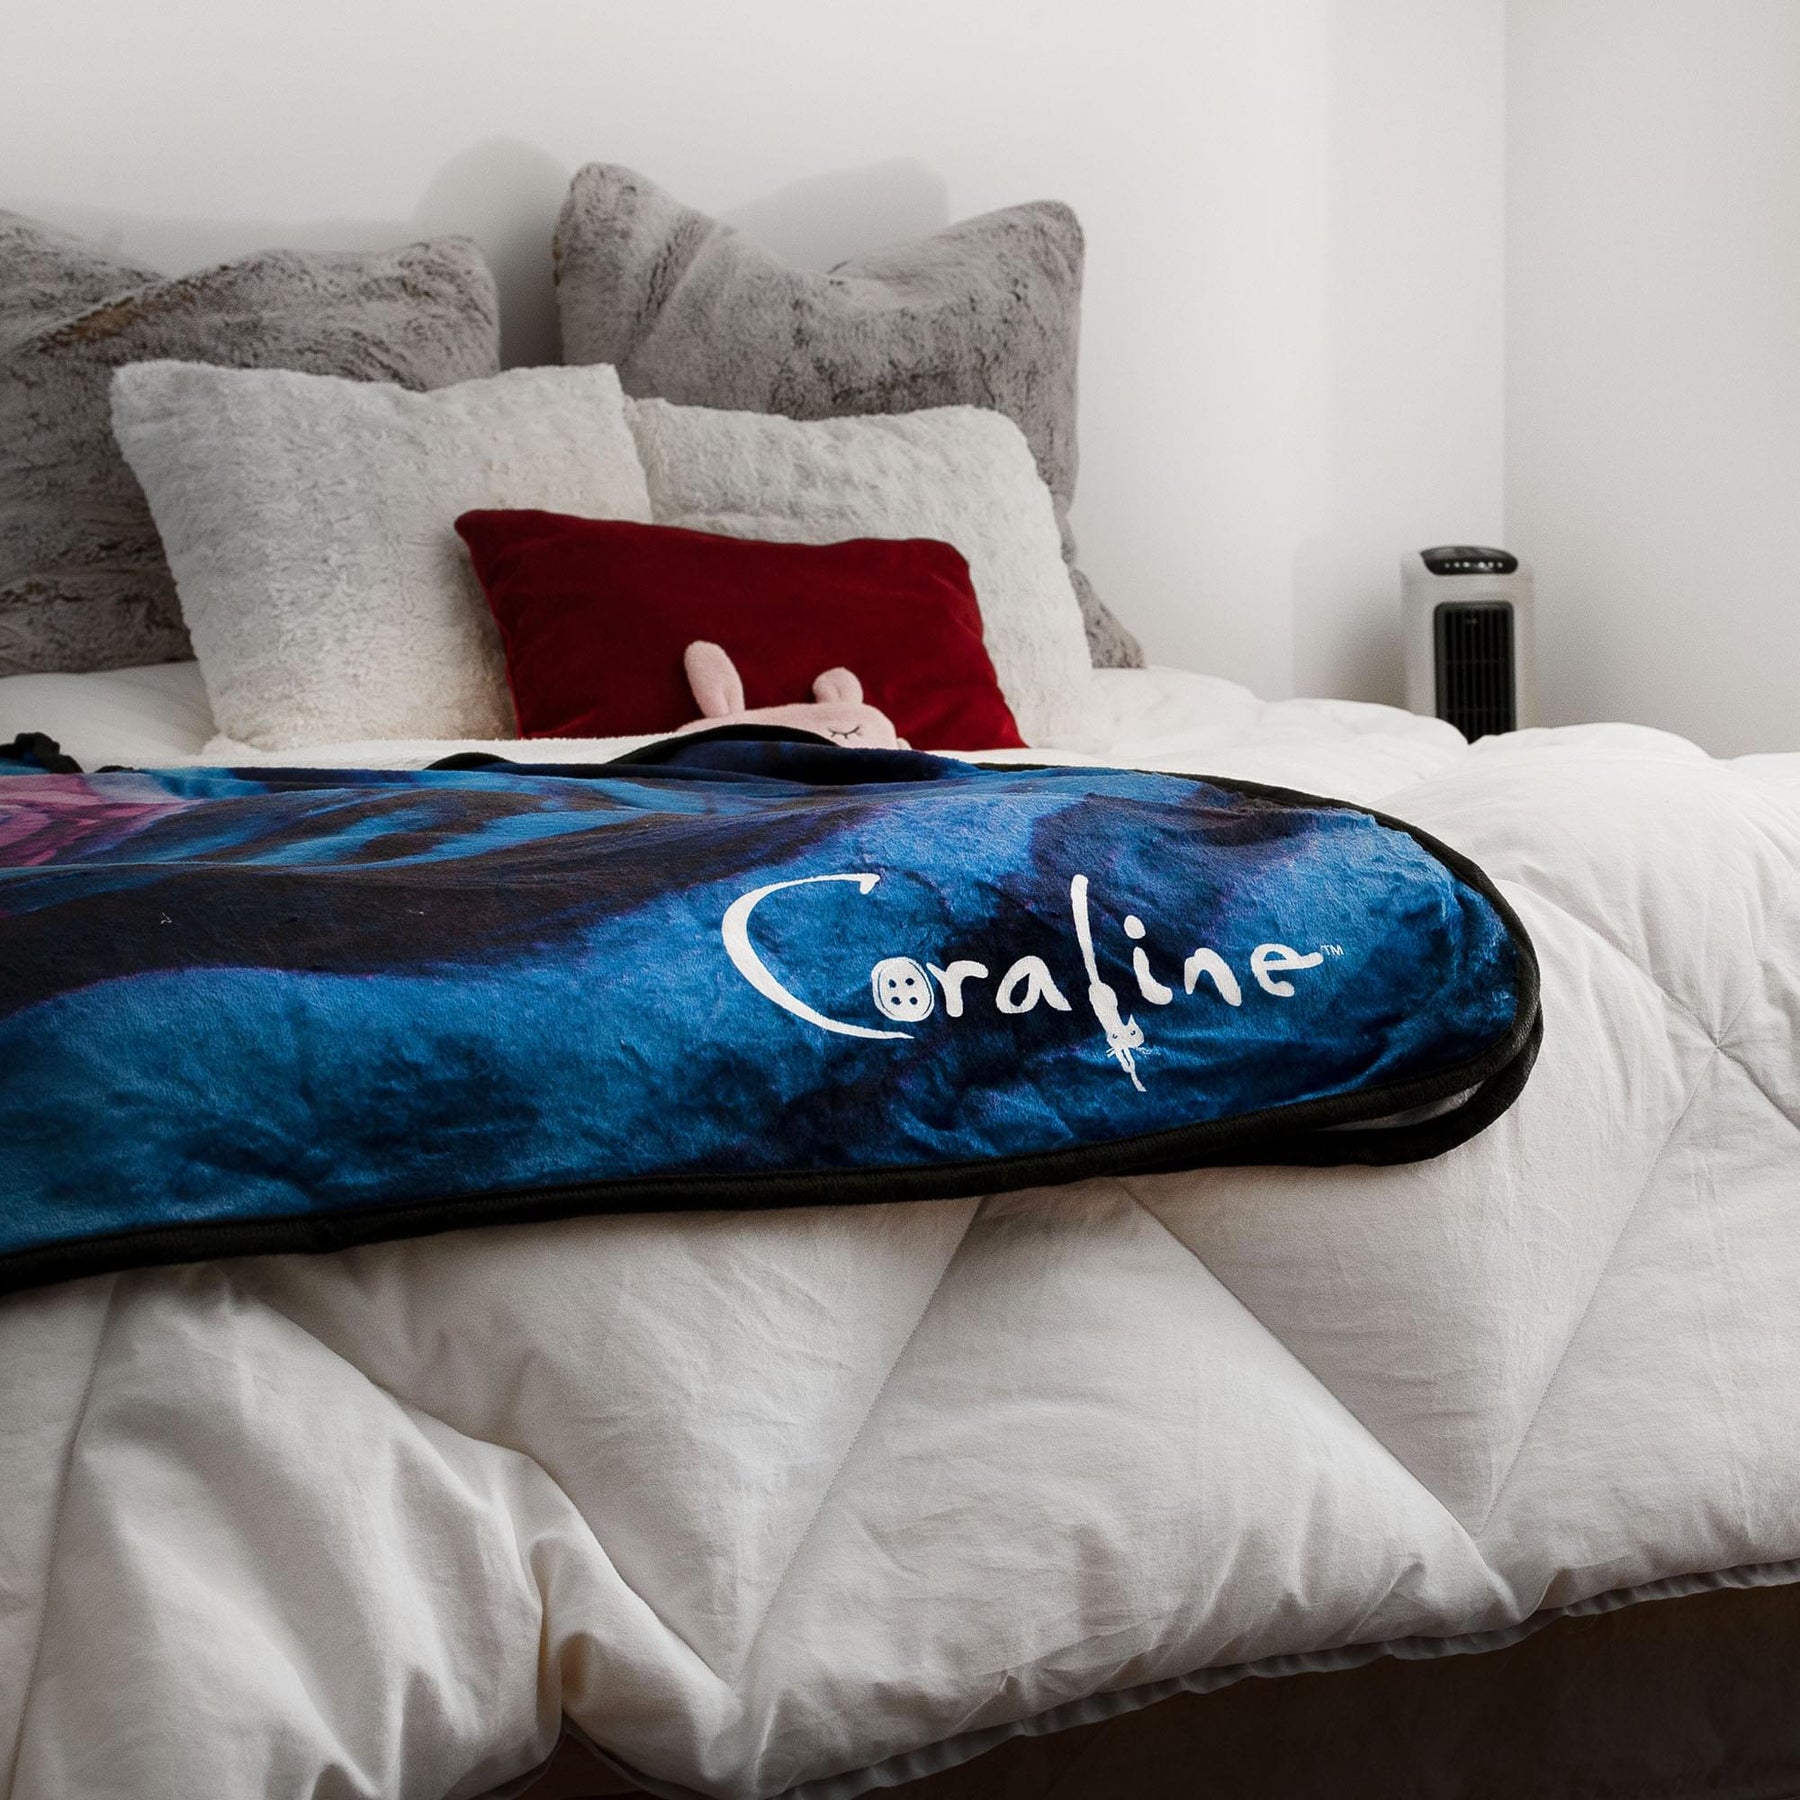 Coraline Fleece Throw Blanket | 45 x 60 Inches